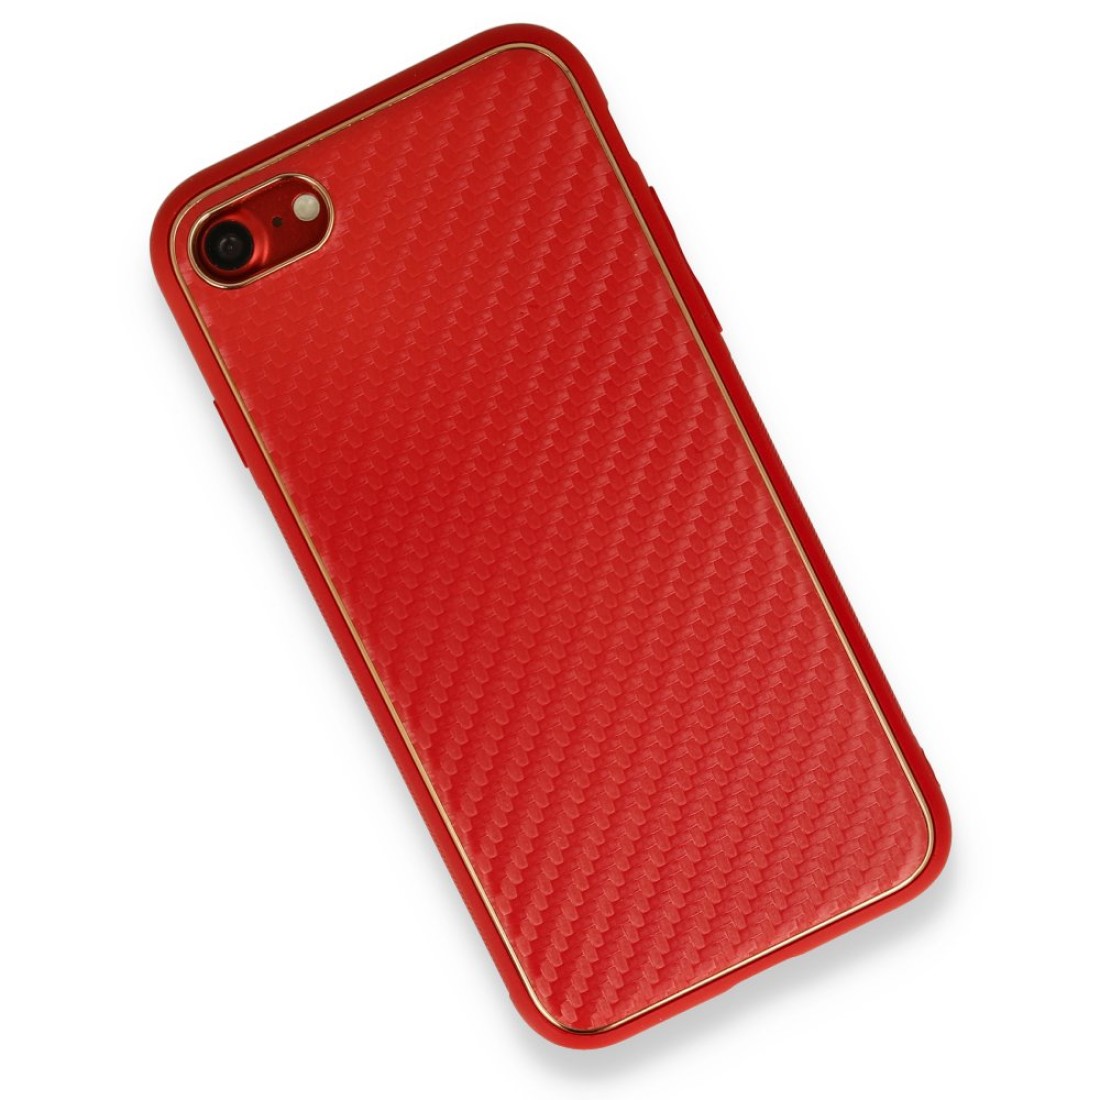 Apple iPhone SE 2020 Kılıf Coco Karbon Silikon - Kırmızı